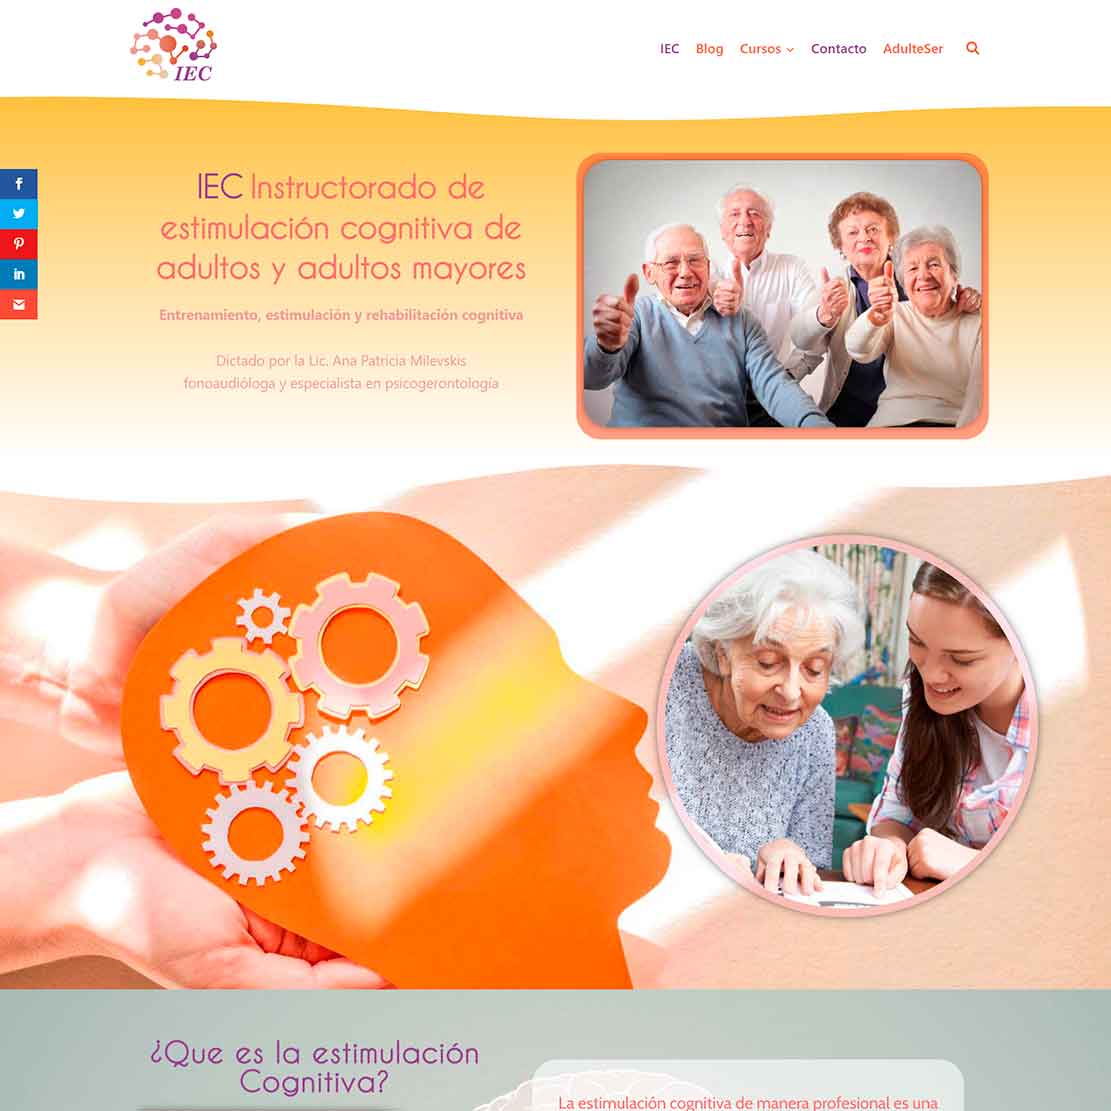 IEC Instructorado de estimulación cognitiva de adultos y adultos mayores